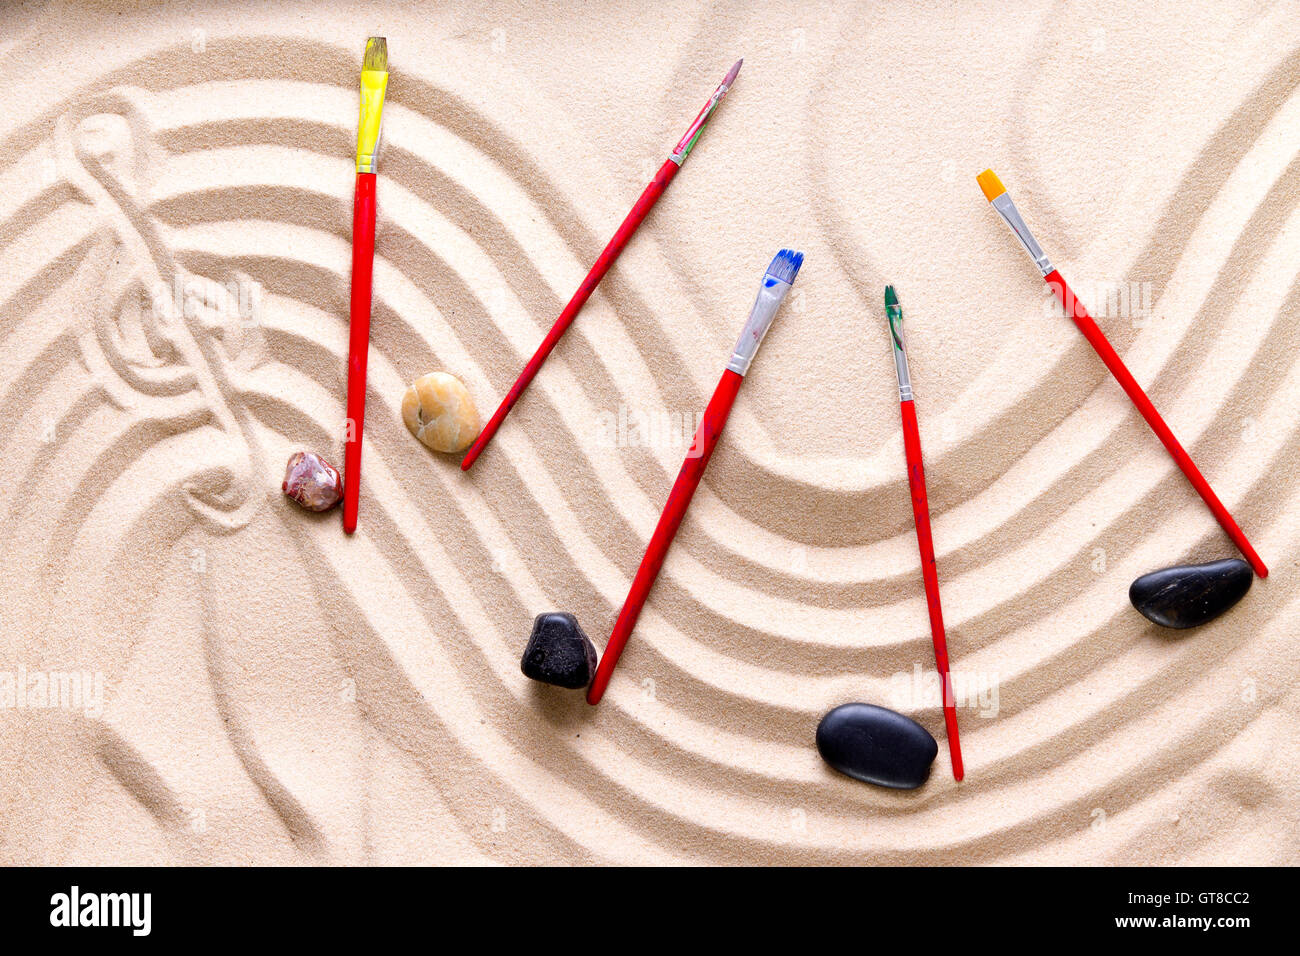 Armonia e la musica in spiaggia con un patrimonio artistico di immagine concettuale di un punteggio ondulata disegnata in sabbia dorata con una chiave di violino Foto Stock